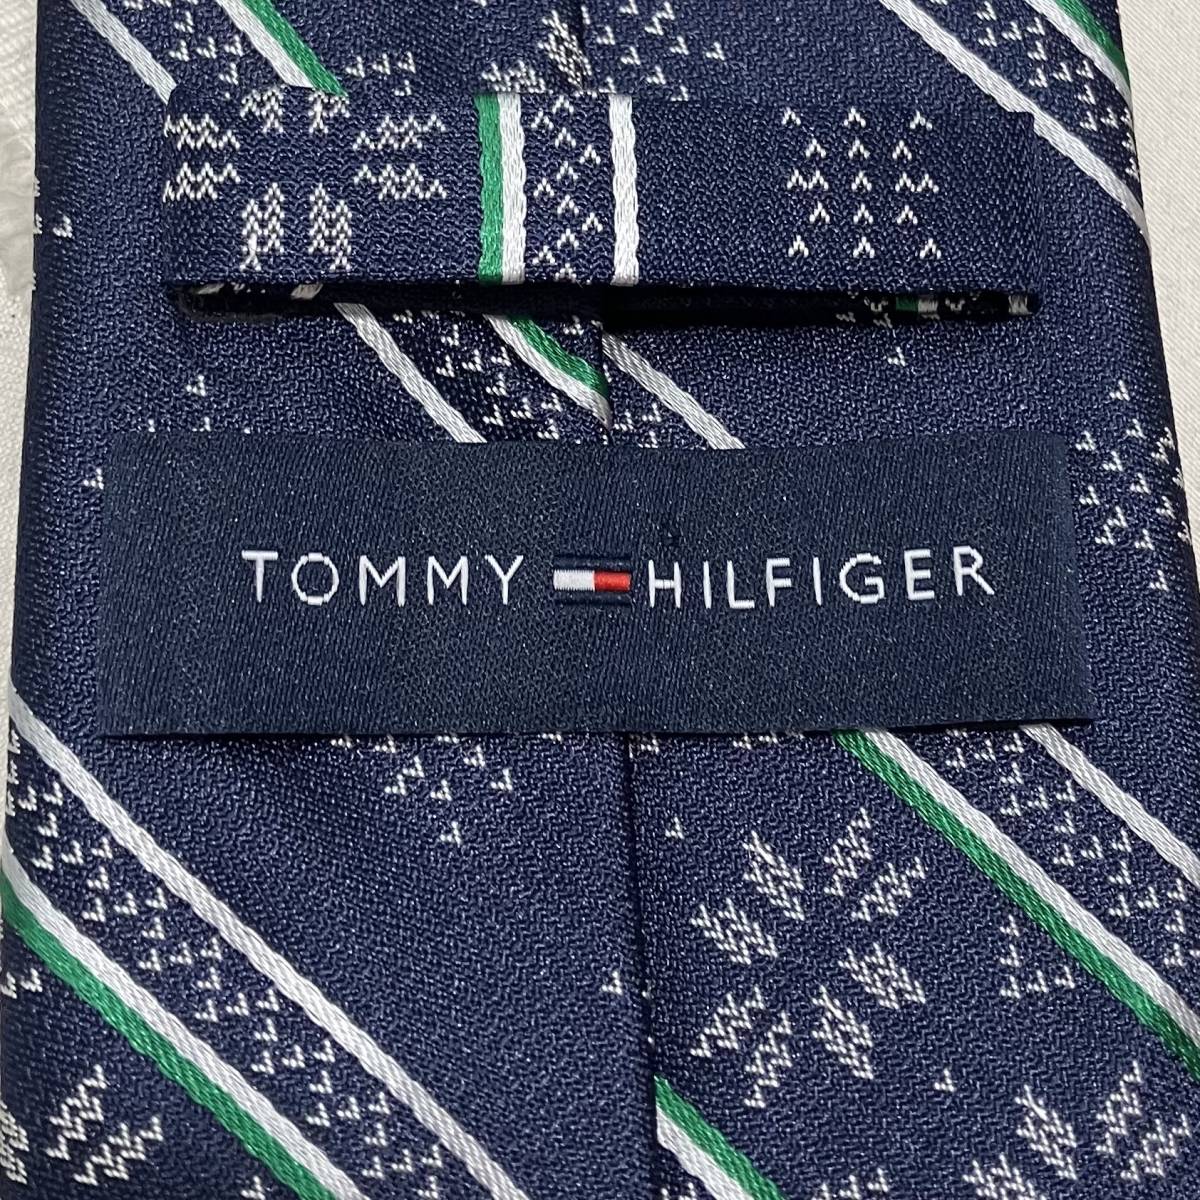 TOMMY HILFIGER Necktie トミーヒルフィガー ネクタイ ネイビー 店舗受取可_画像2